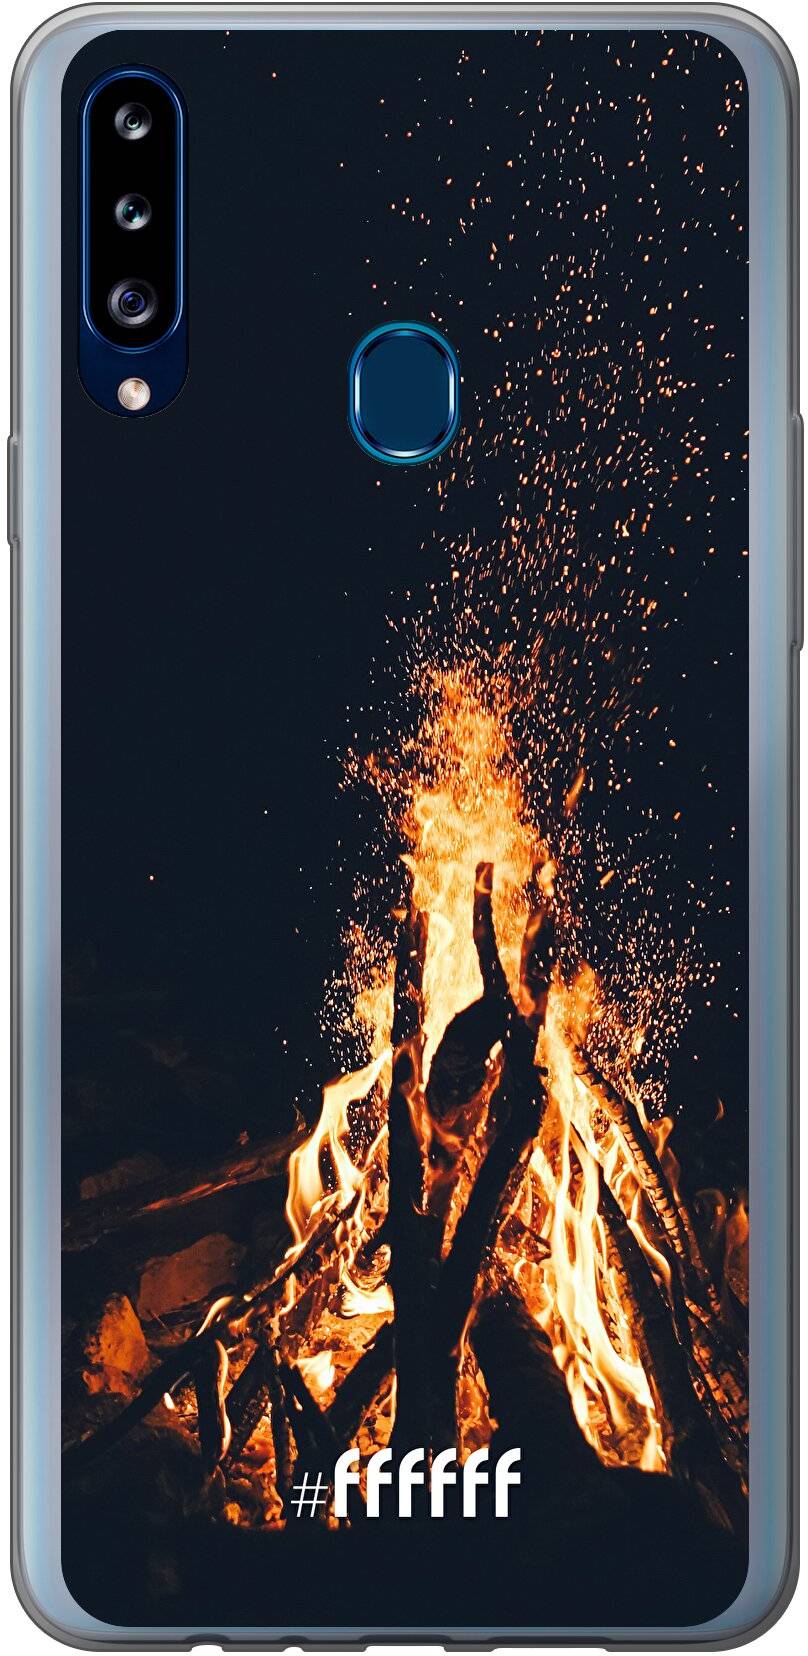 Bonfire Galaxy A20s